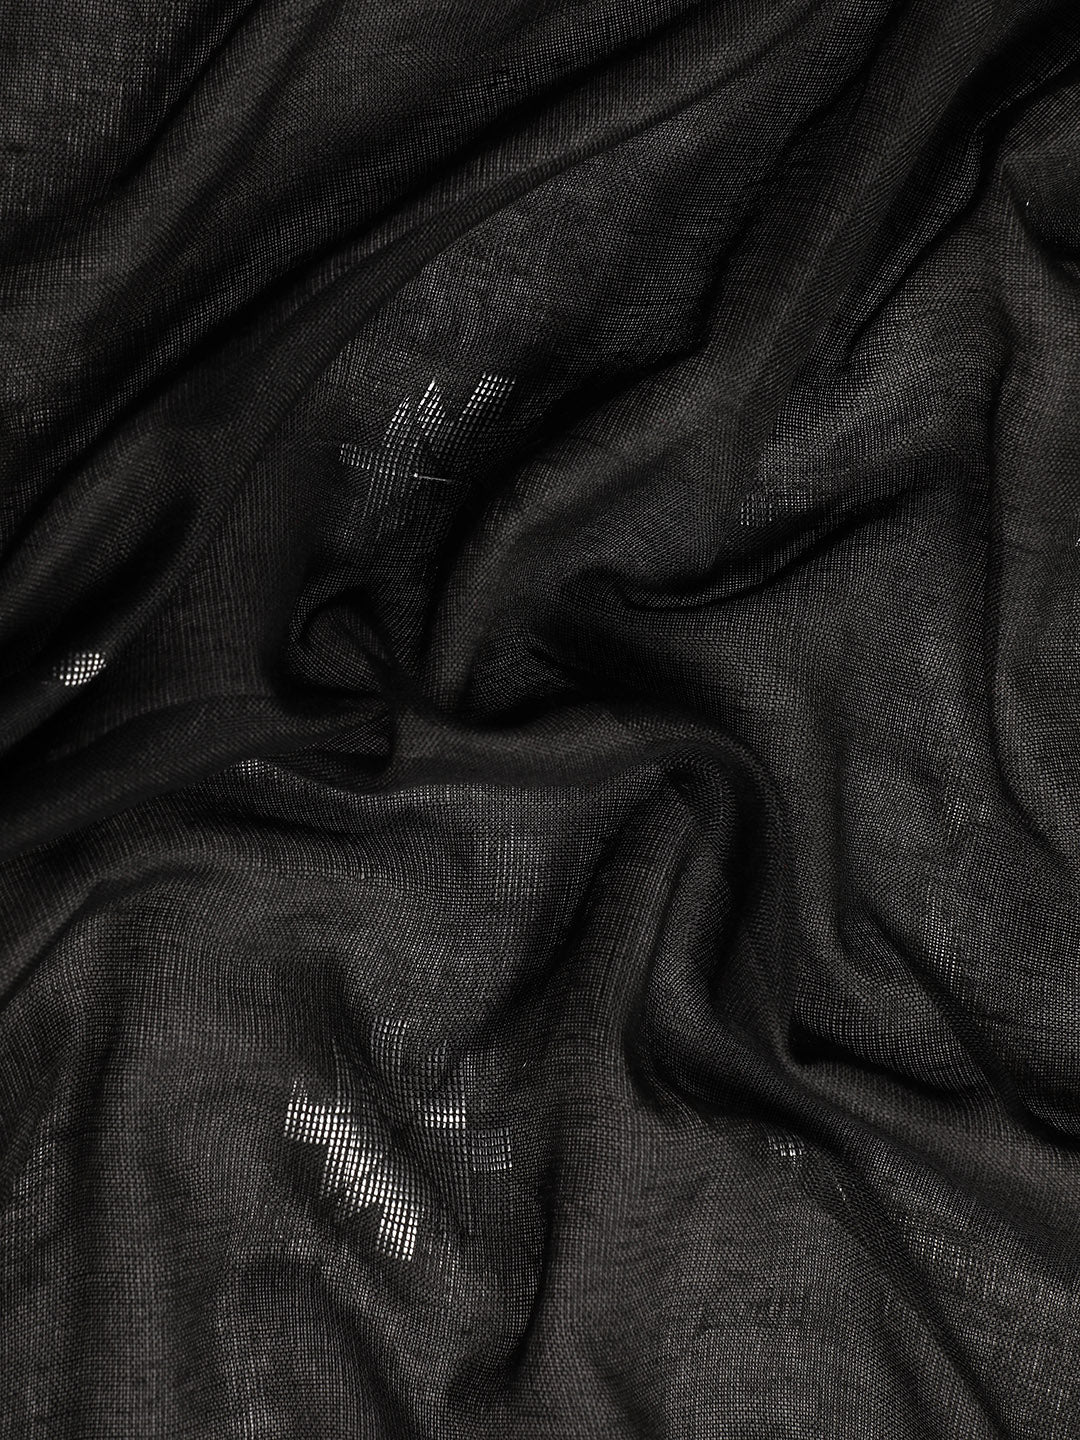 Black White Woven Cotton Saree